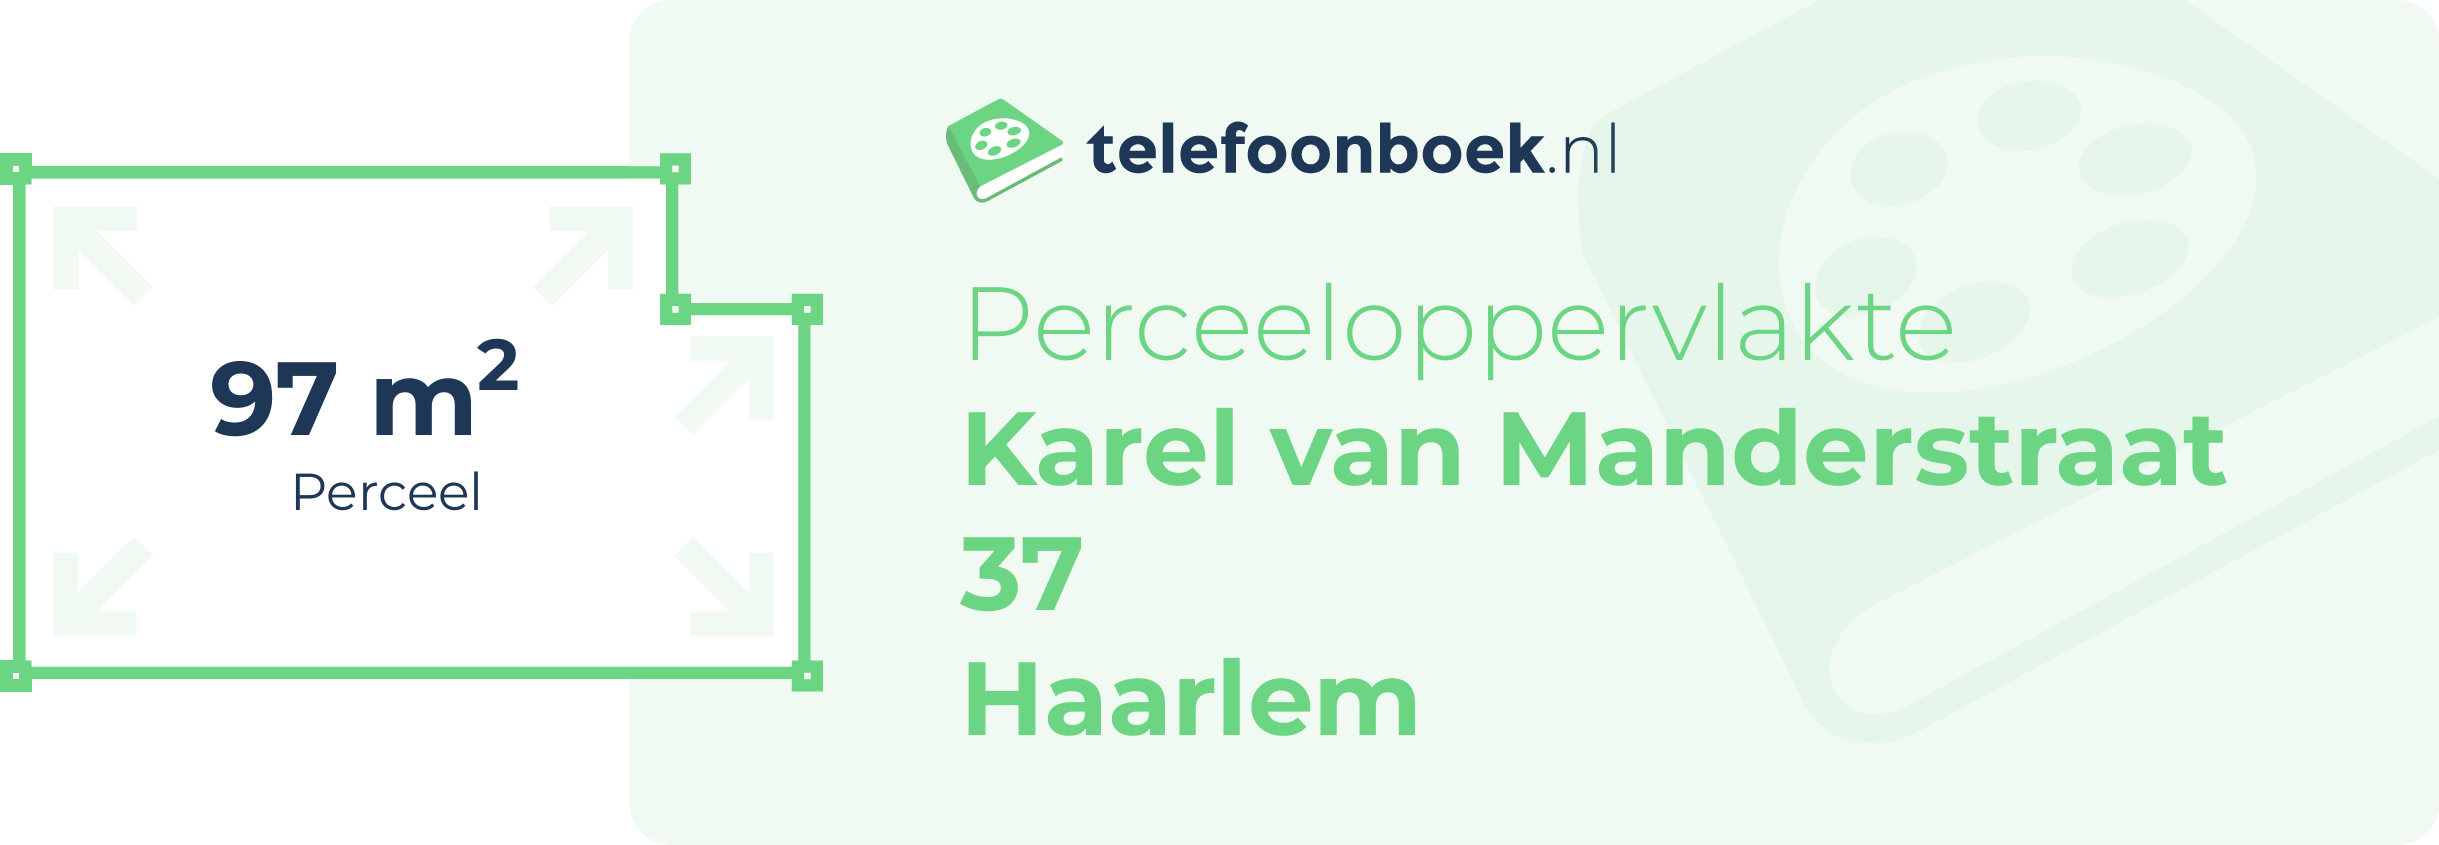 Perceeloppervlakte Karel Van Manderstraat 37 Haarlem